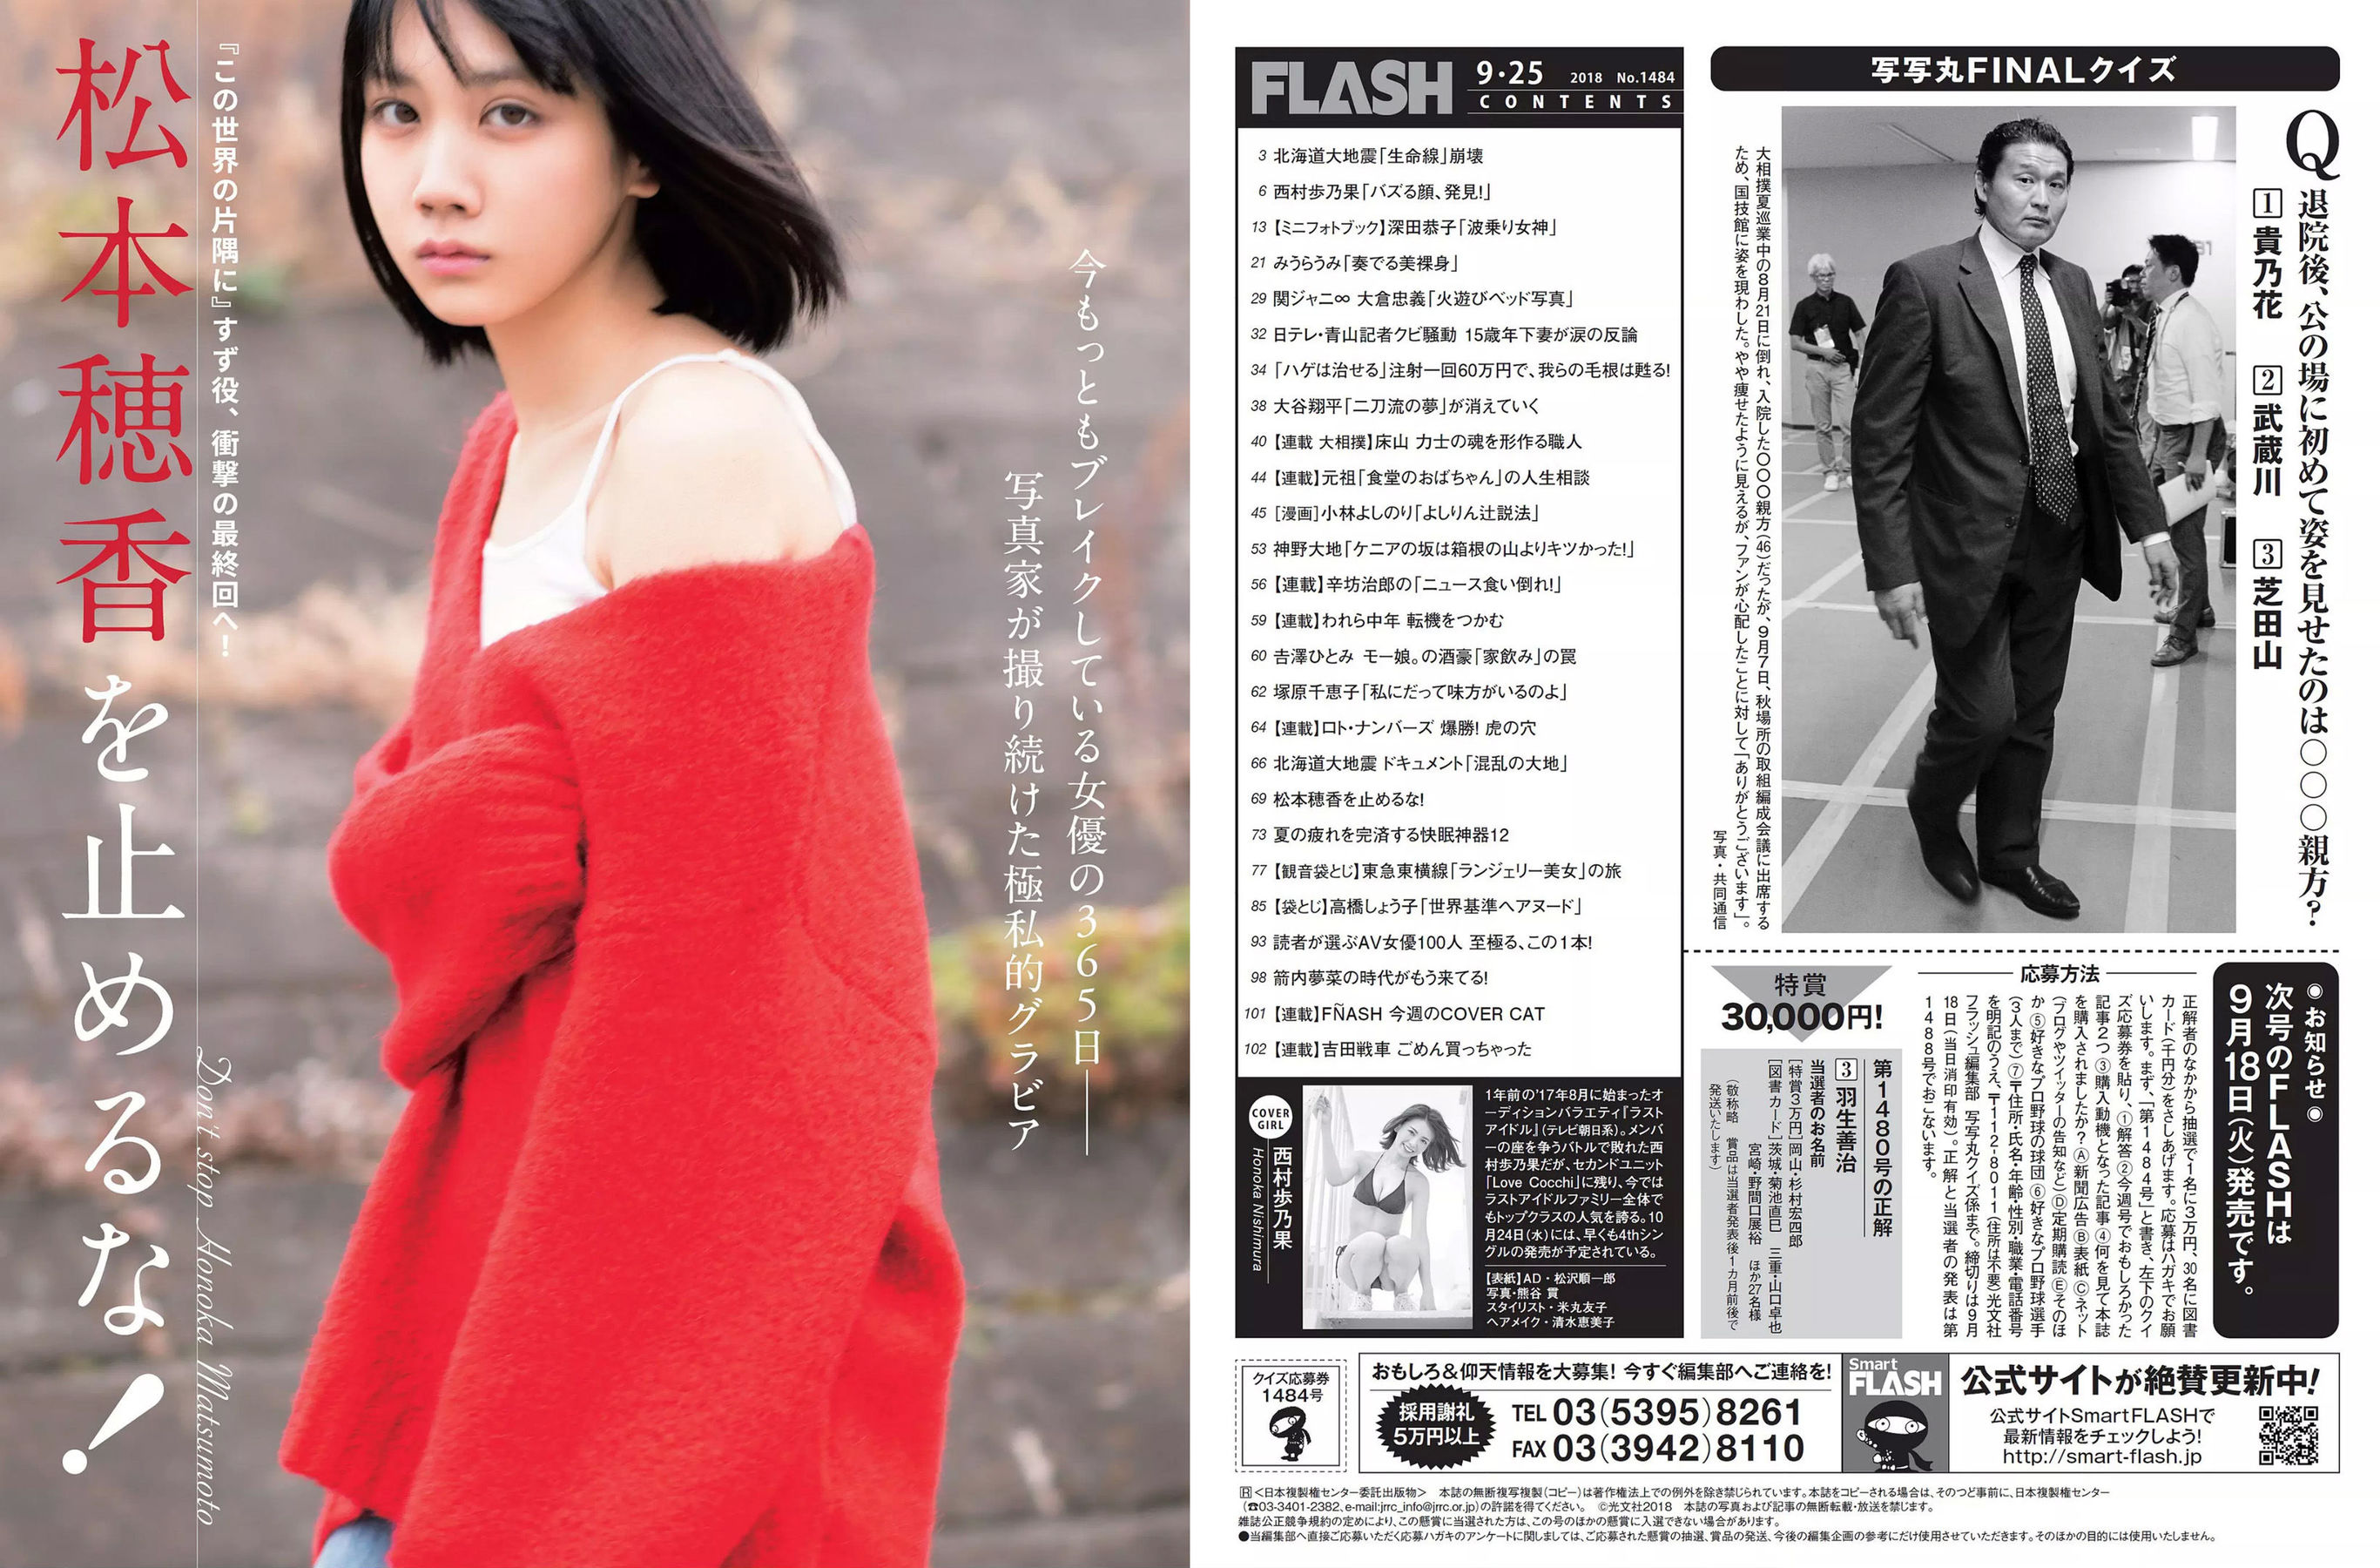 [FLASH] Honoka Nishimura Kyoko Fukada Umi Miura Honoka Matsumoto Shoko Takahashi 2018.09.25 Photograph Page 11 No.33eede